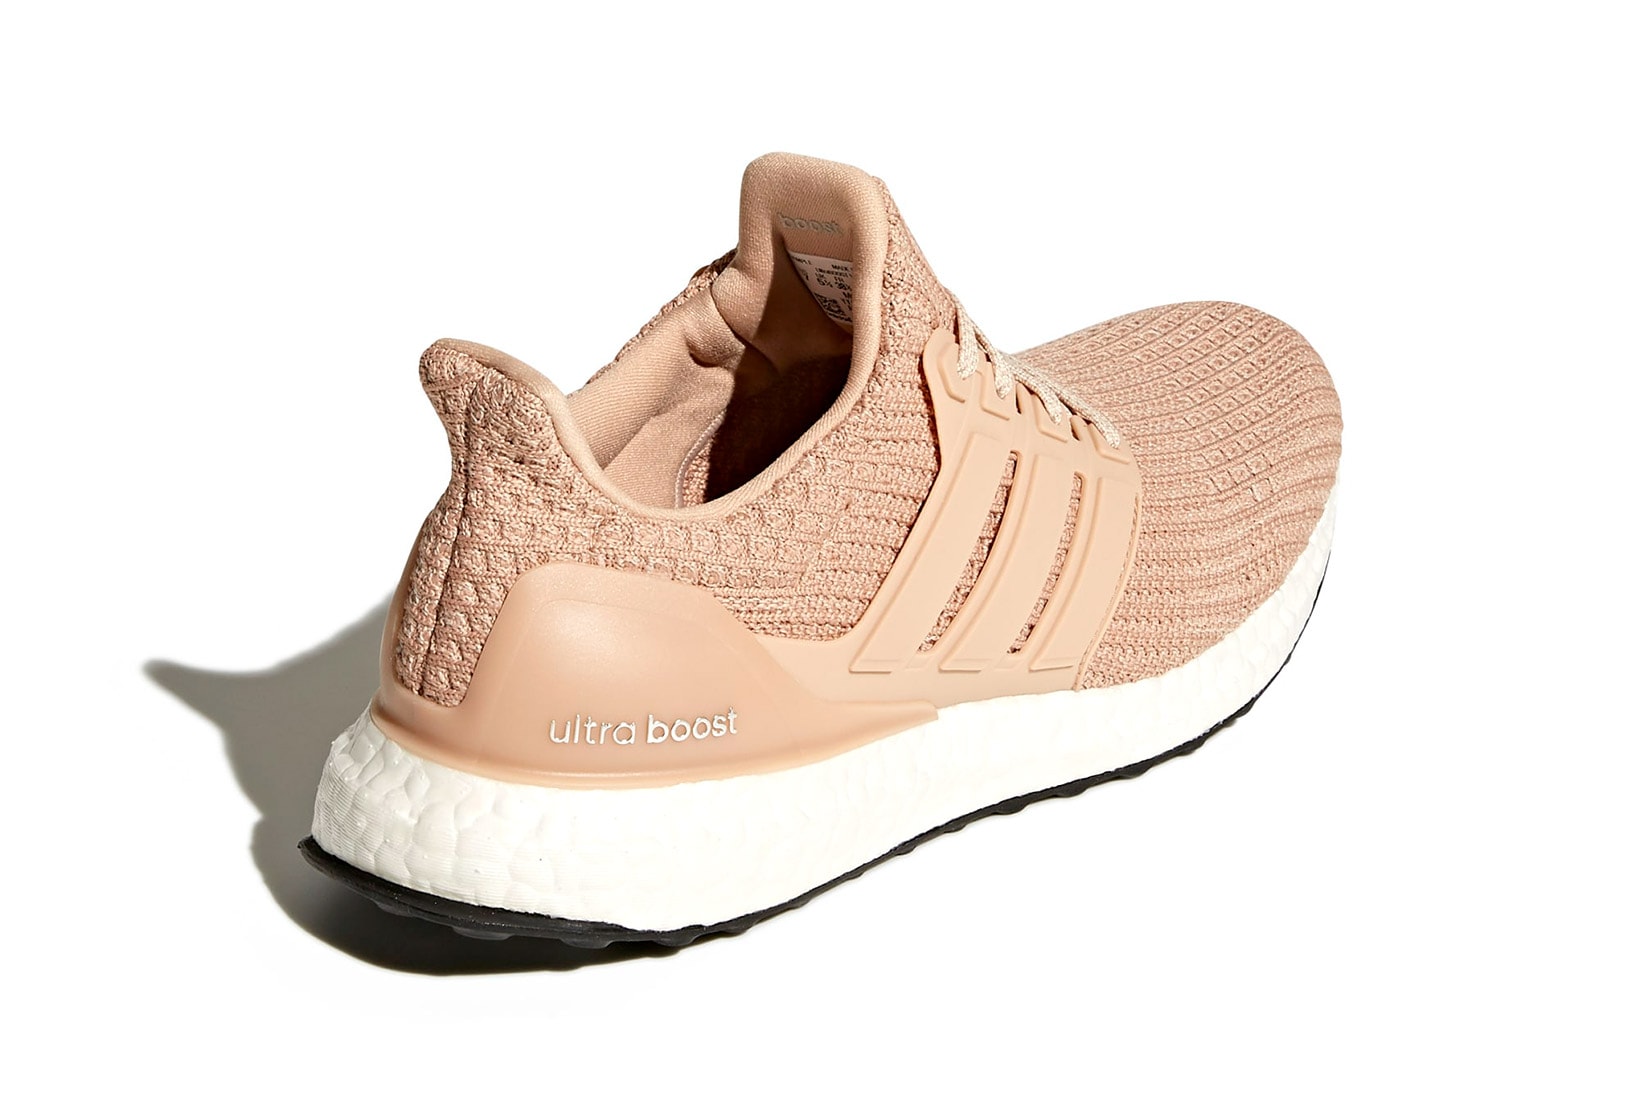 adidas ultraboost womens sneakers nude pink white colorway shoes footwear sneakerhead